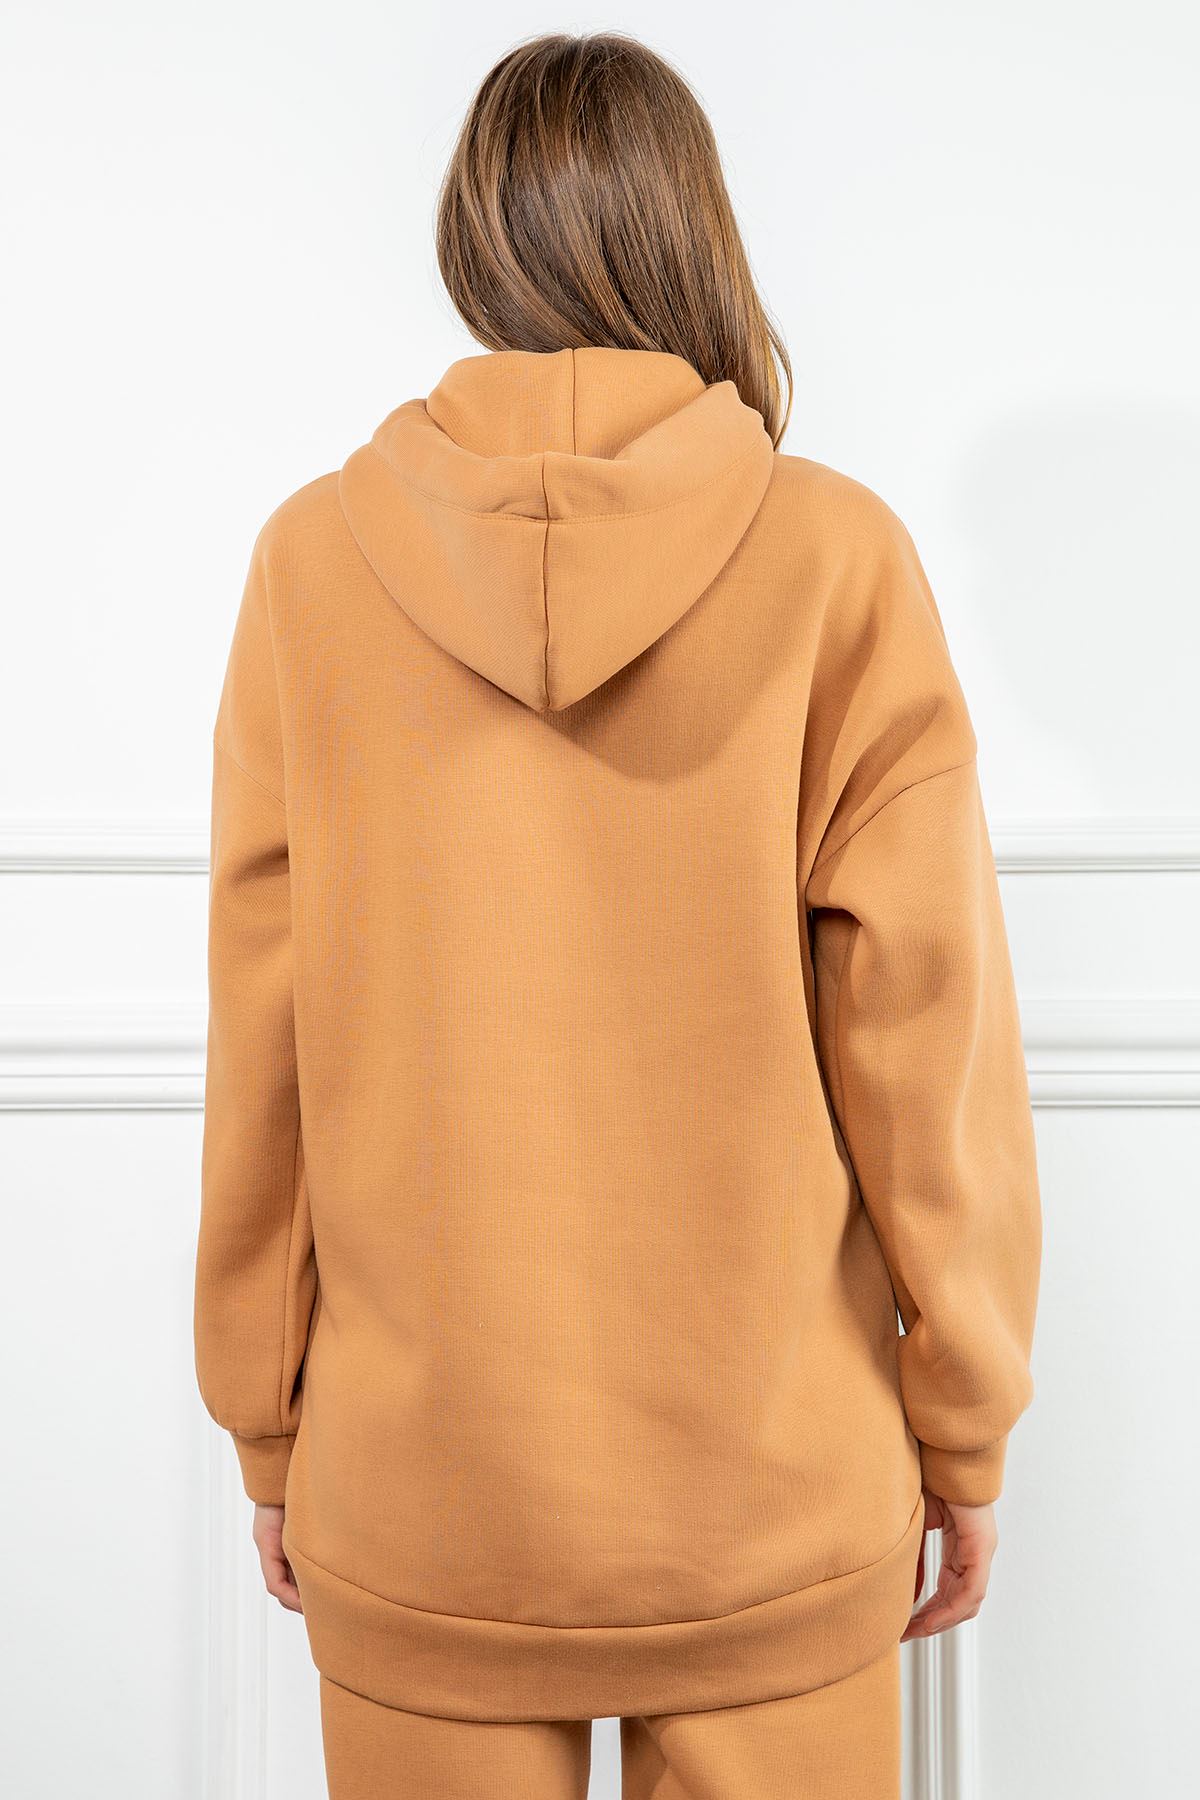 Third Knit Fabric Long Sleeve Hooded Long Oversize Women Sweatshirt - Light Brown